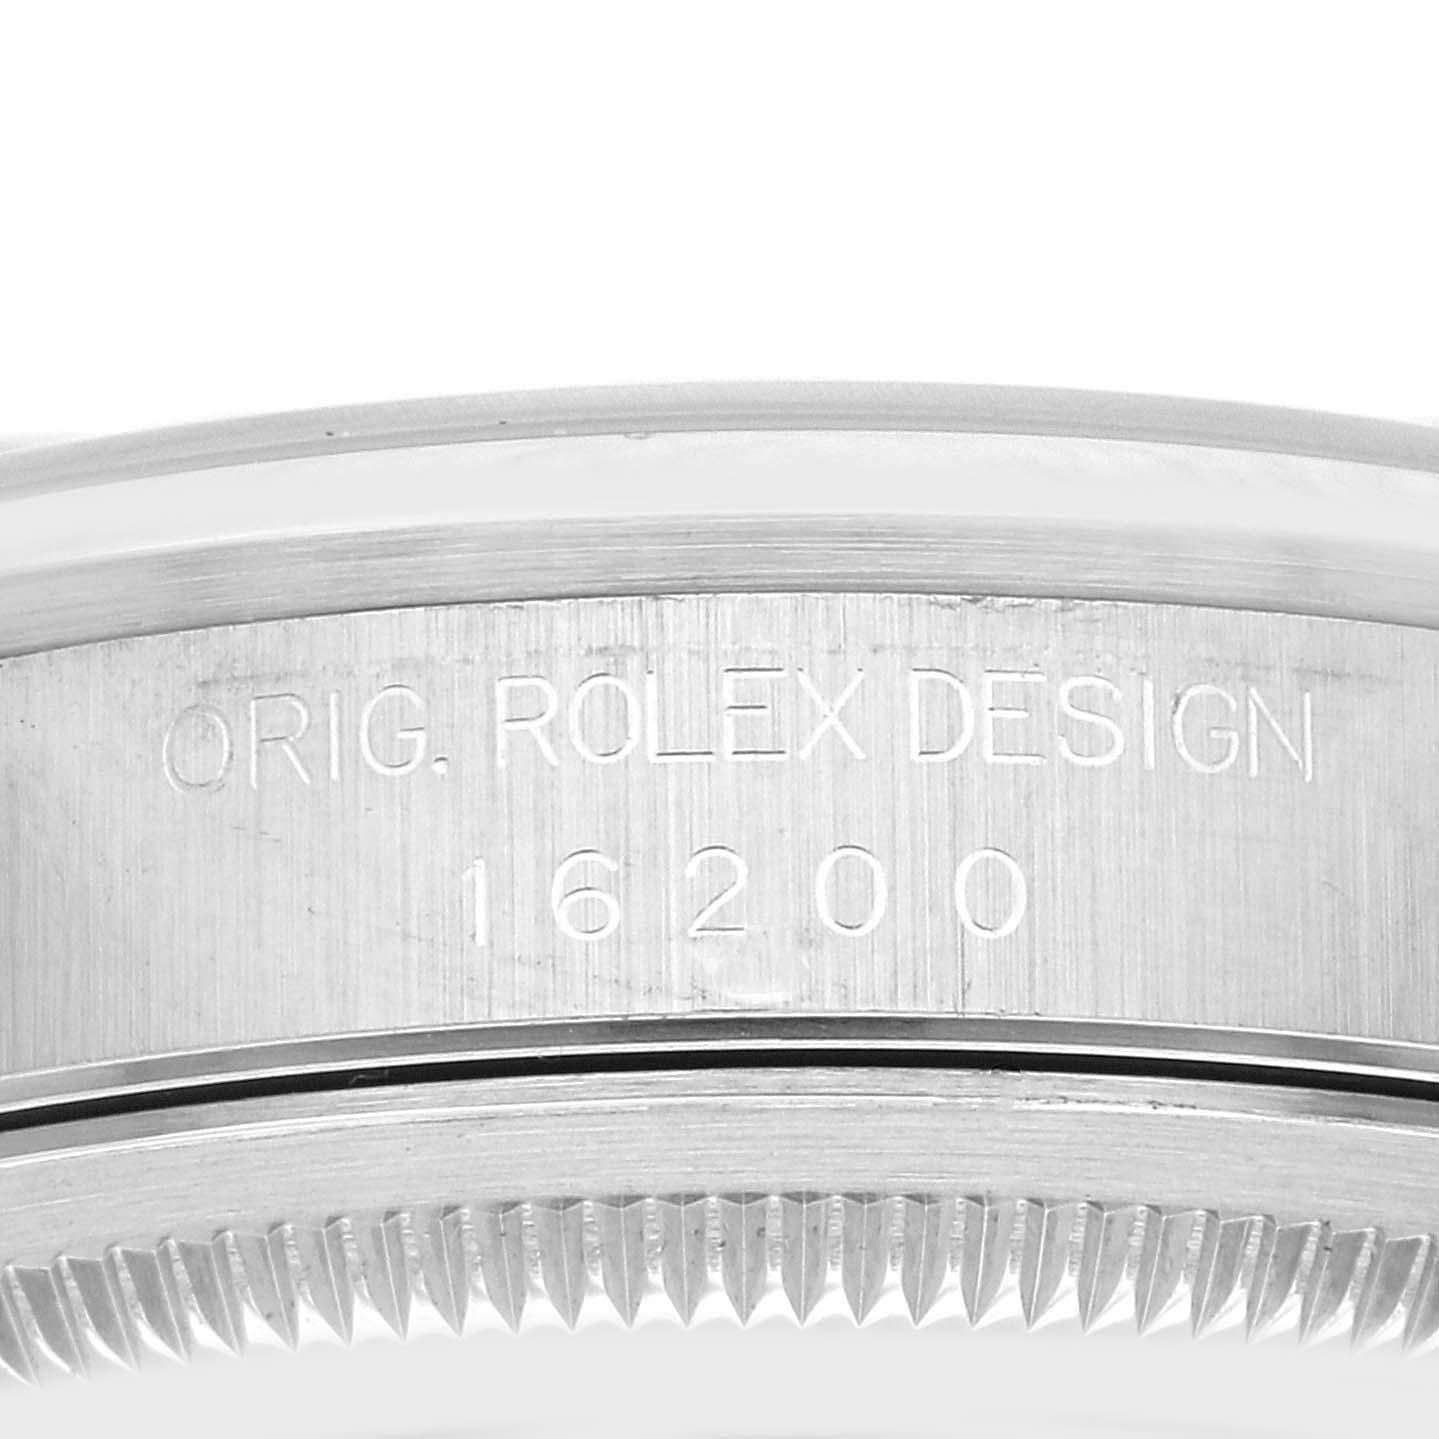 Rolex Datejust Blue Dial Smooth Bezel Steel Mens Watch 16200 Box Papers. Mouvement automatique à remontage automatique, officiellement certifié chronomètre, avec fonction de date rapide. Boîtier oyster en acier inoxydable de 36 mm de diamètre. Logo